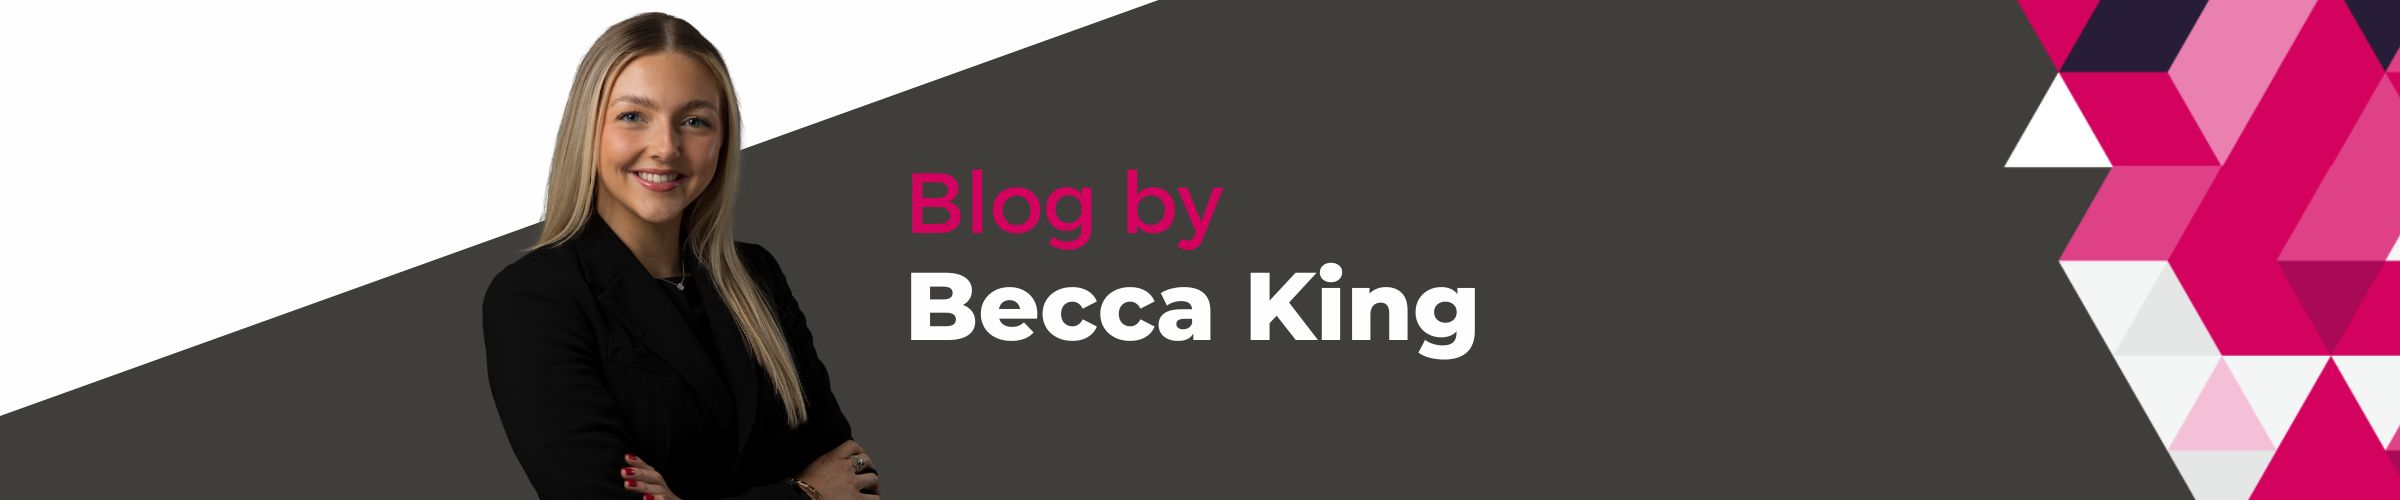 Becca King 1